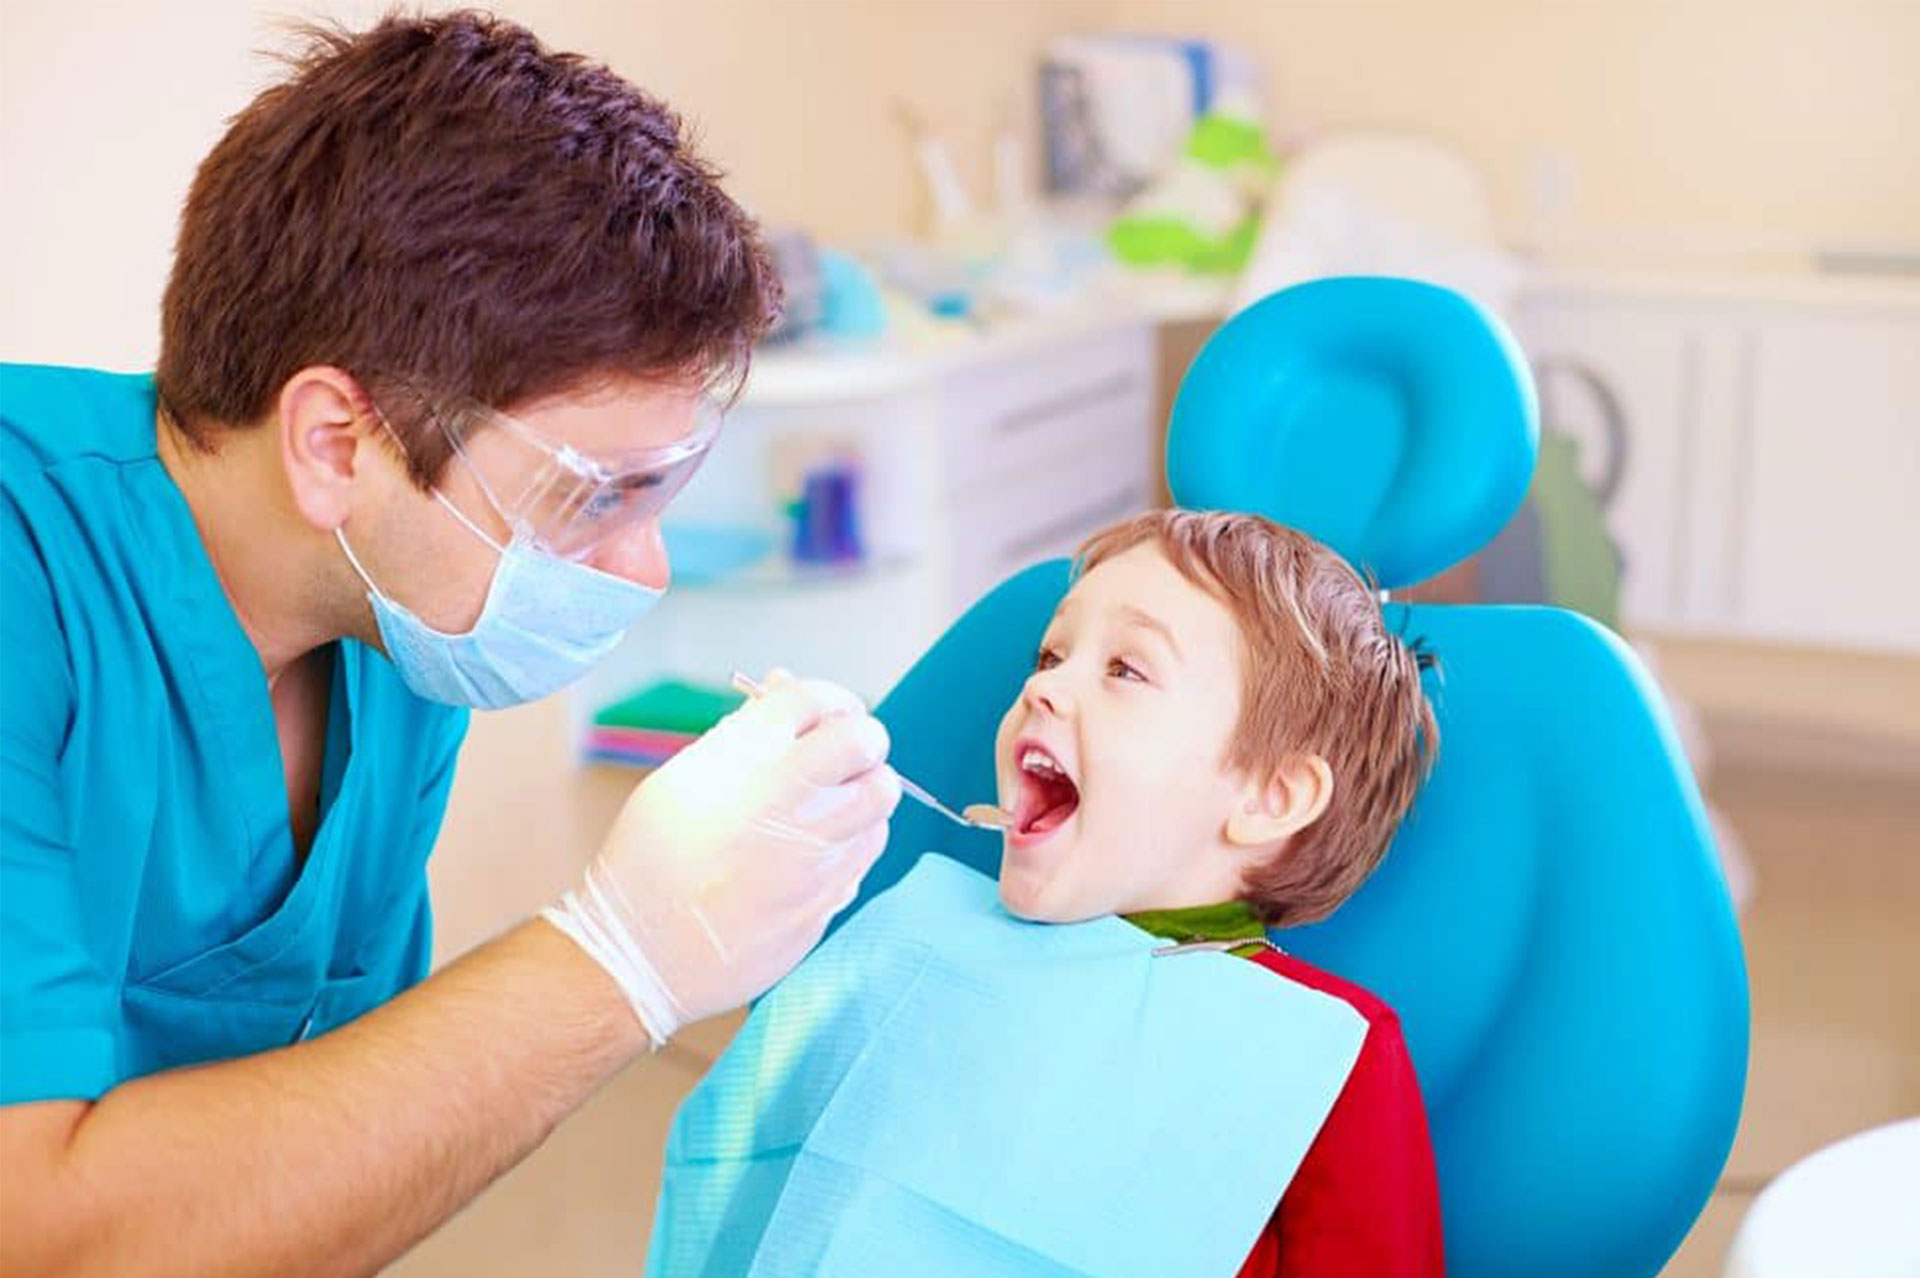 Dentistry for kids